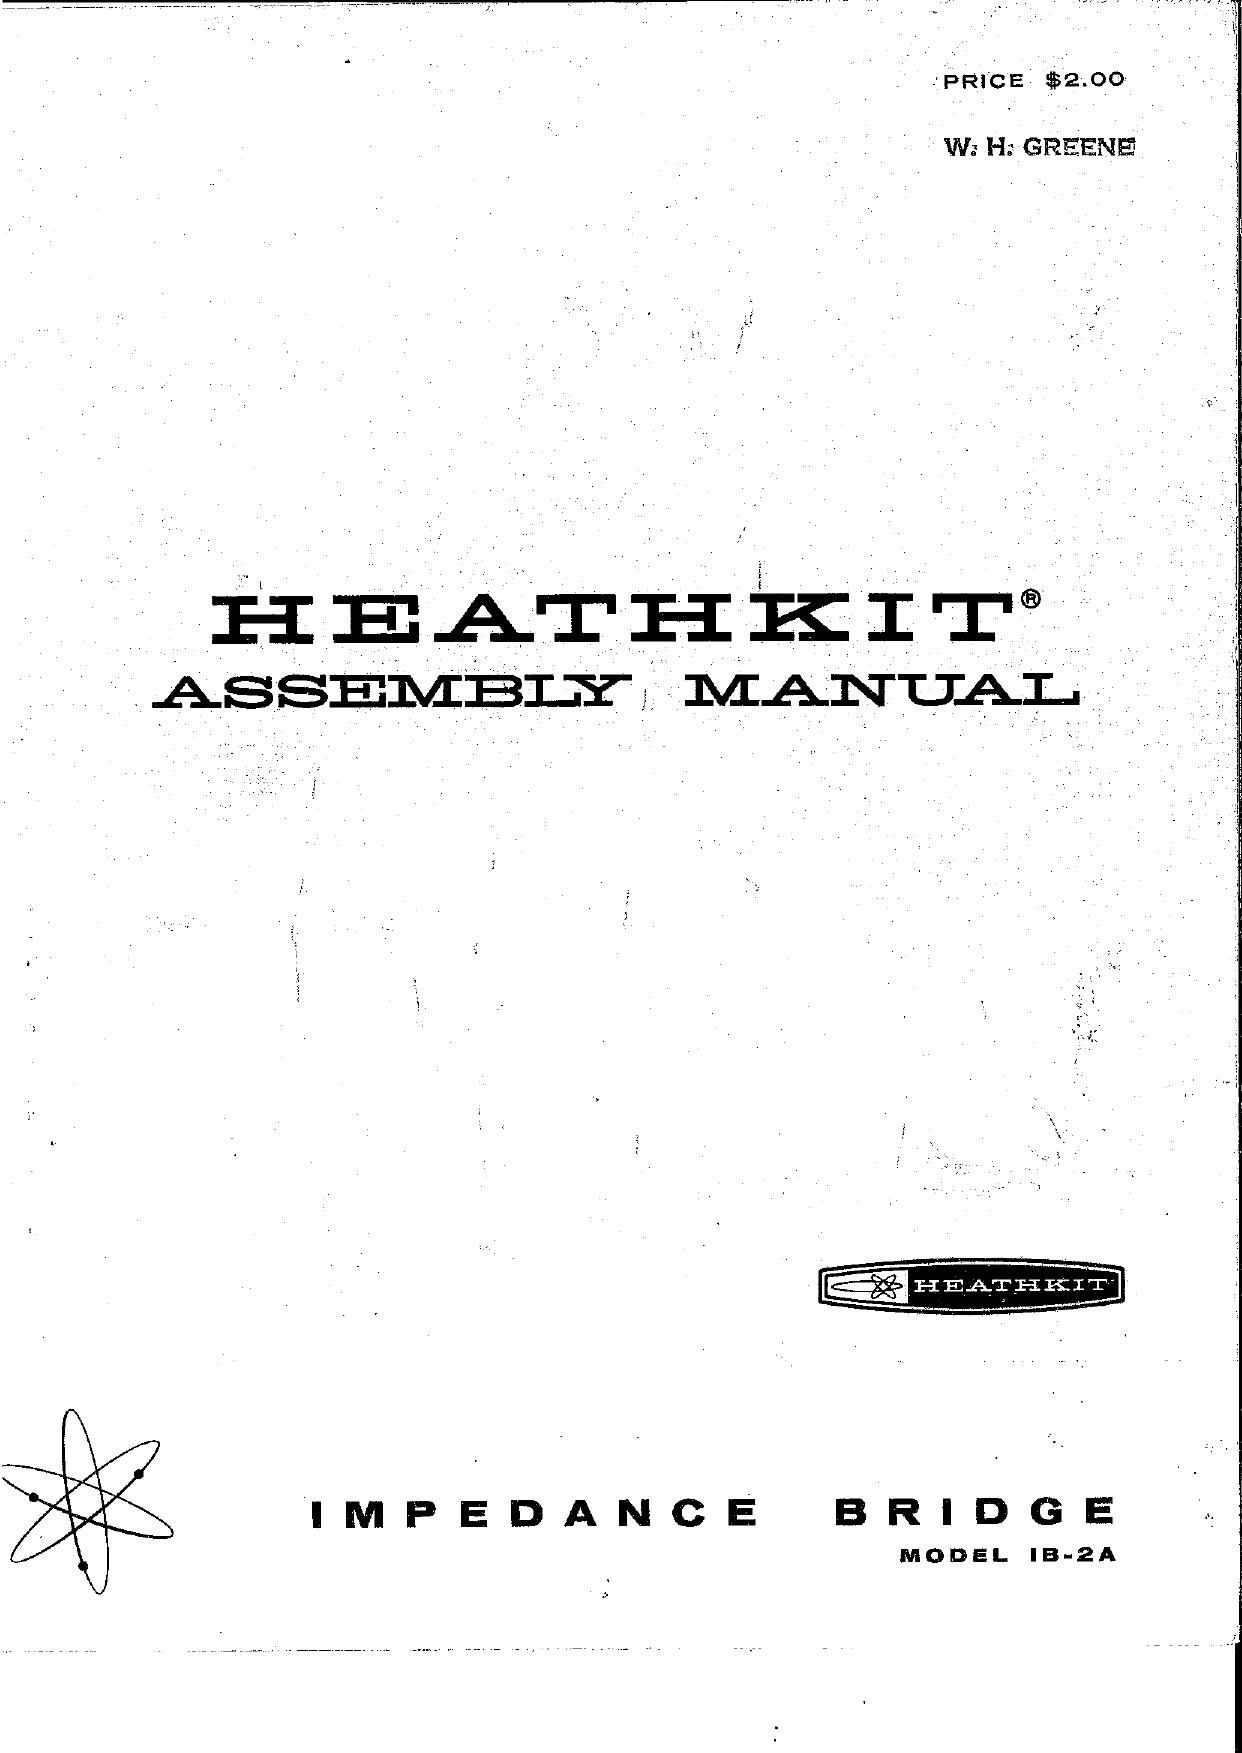 Heathkit IB 2A Manual